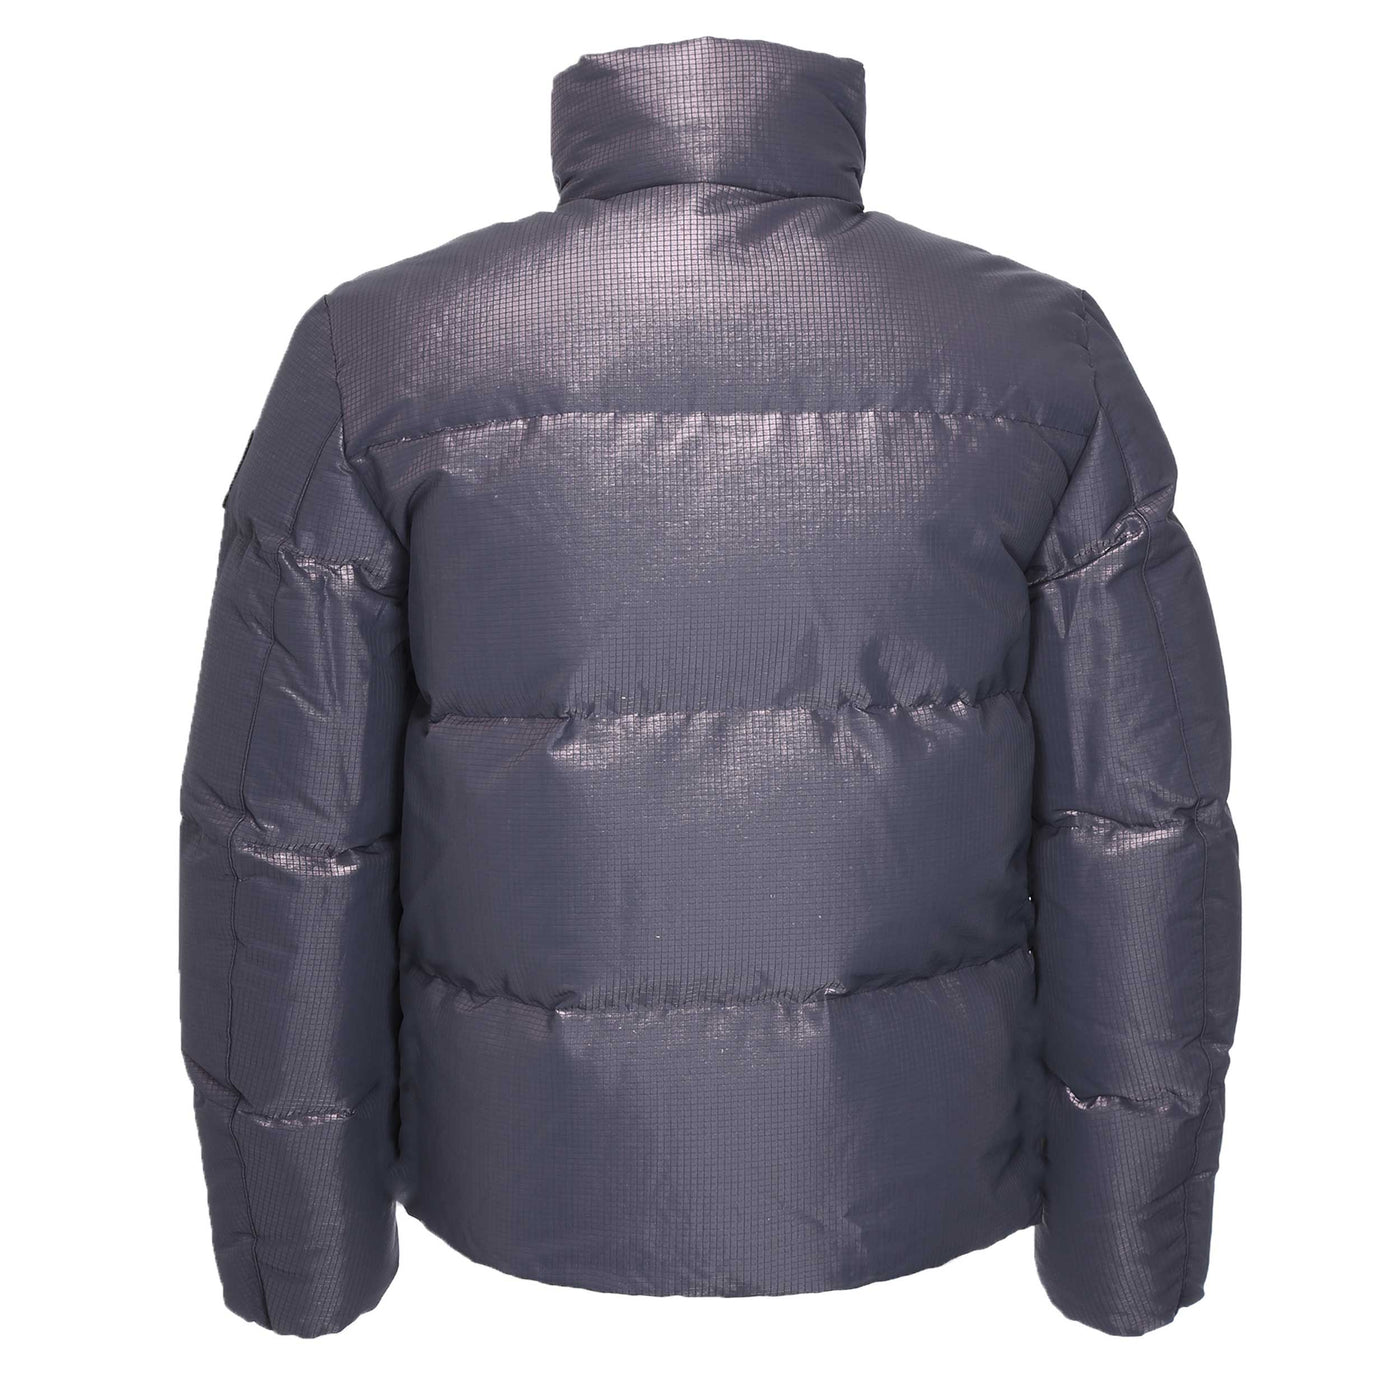 Belstaff Grid Paxton Jacket in Dark Garnet Back